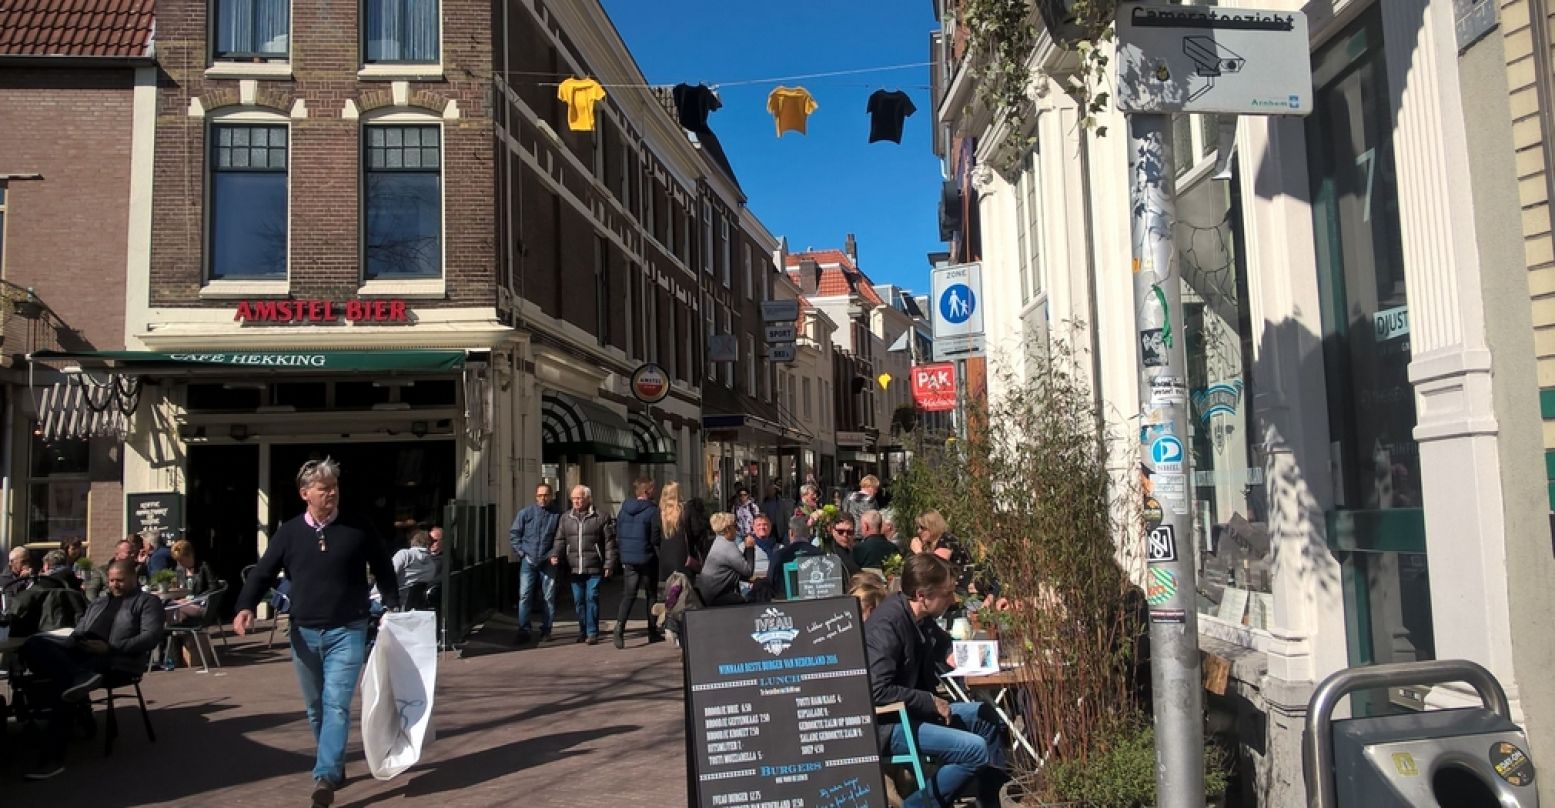 Lekker shoppen en een terrasje pikken in Arnhem. Foto: DagjeWeg.NL